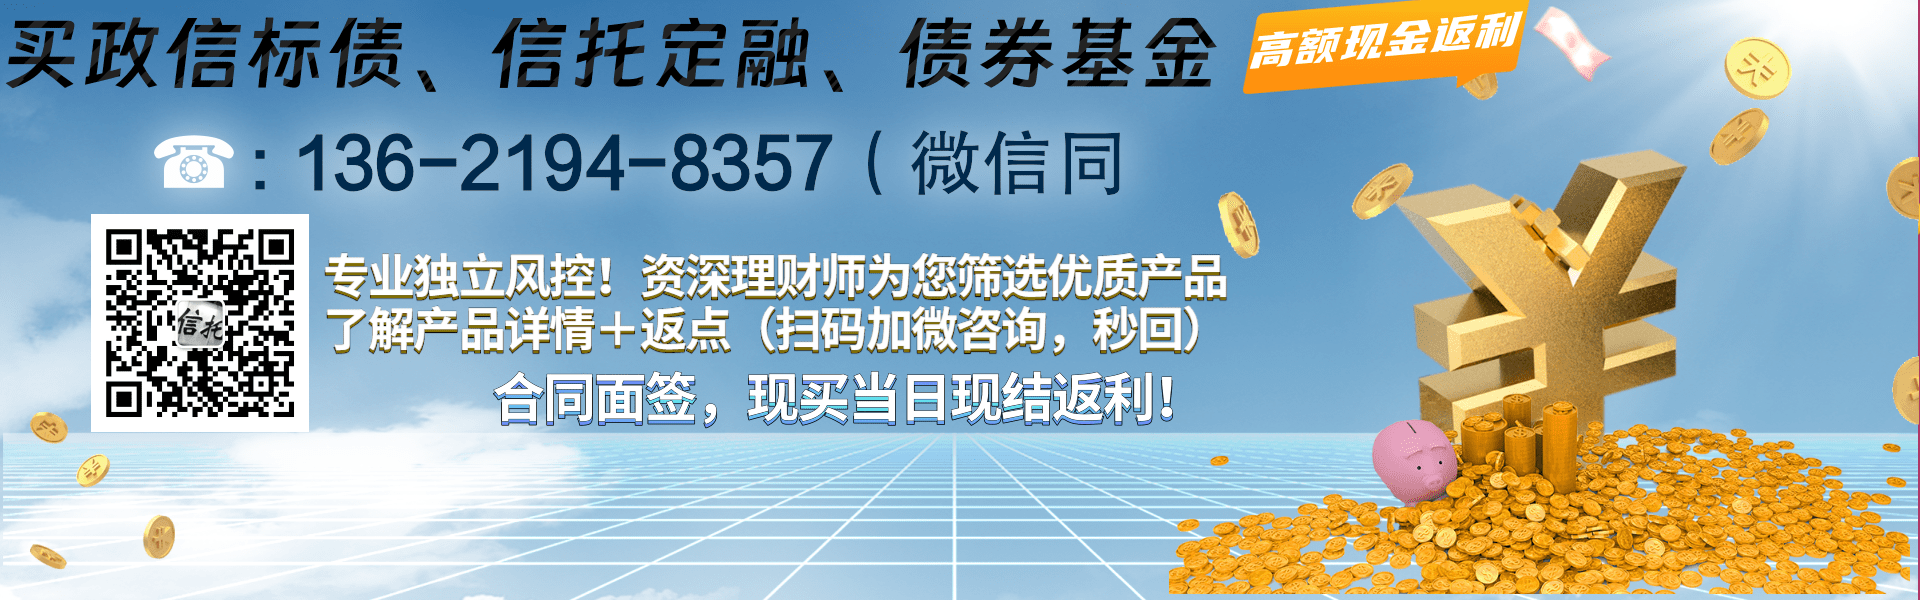 央企信托-RY431号浙江湖州政信集合资金信托计划